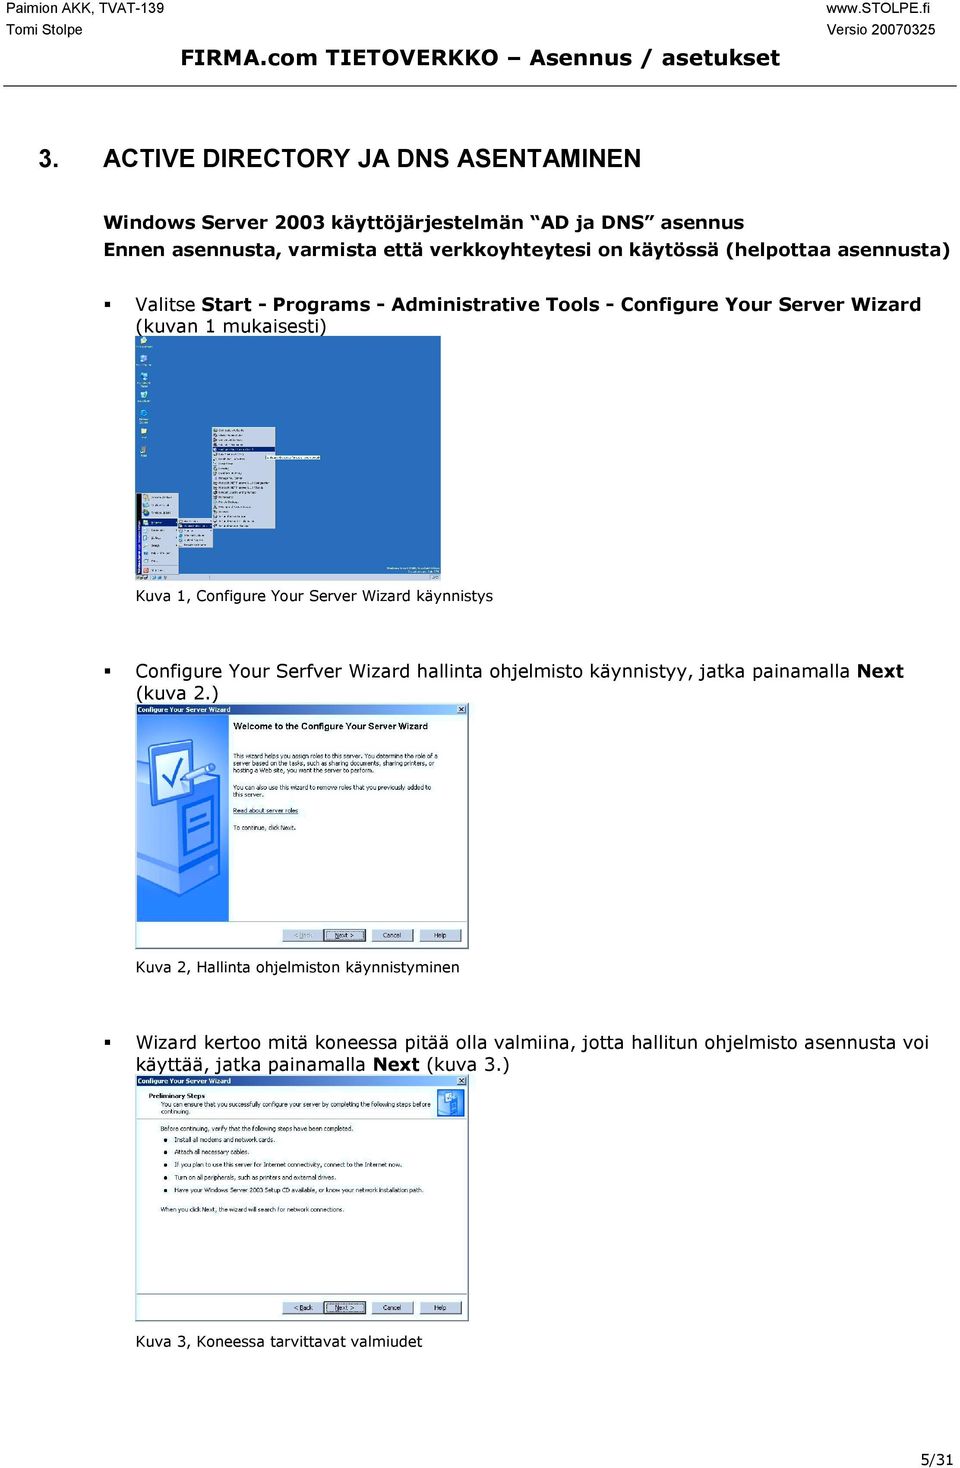 käynnistys " Configure Your Serfver Wizard hallinta ohjelmisto käynnistyy, jatka painamalla Next (kuva 2.